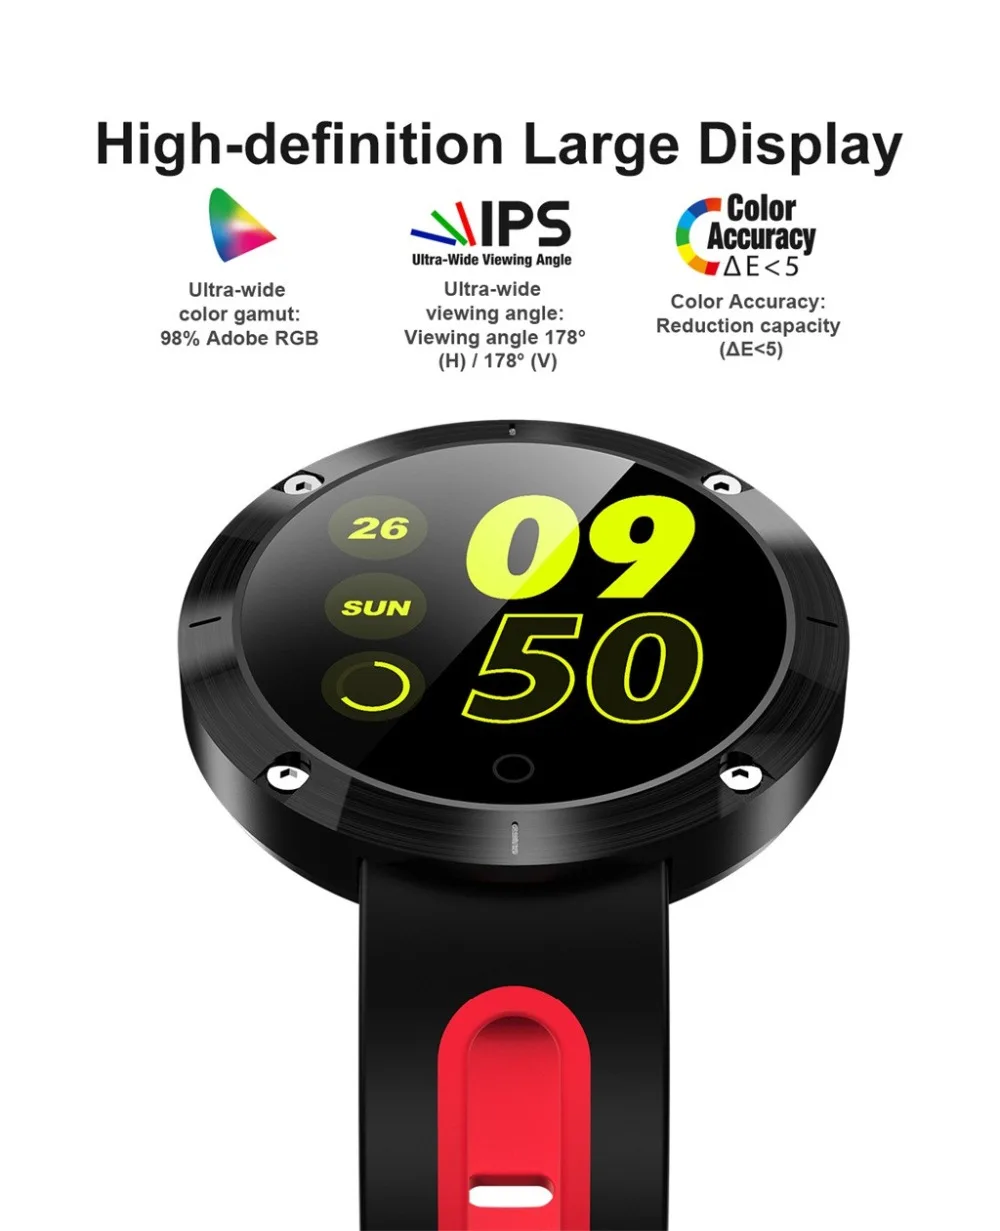 Роскошные Смарт-часы для девочек, умные часы, Android IOS, одежда для женщин, женщин, мужчин, женщин, часы с Bluetooth, совместимы с сотовым телефоном